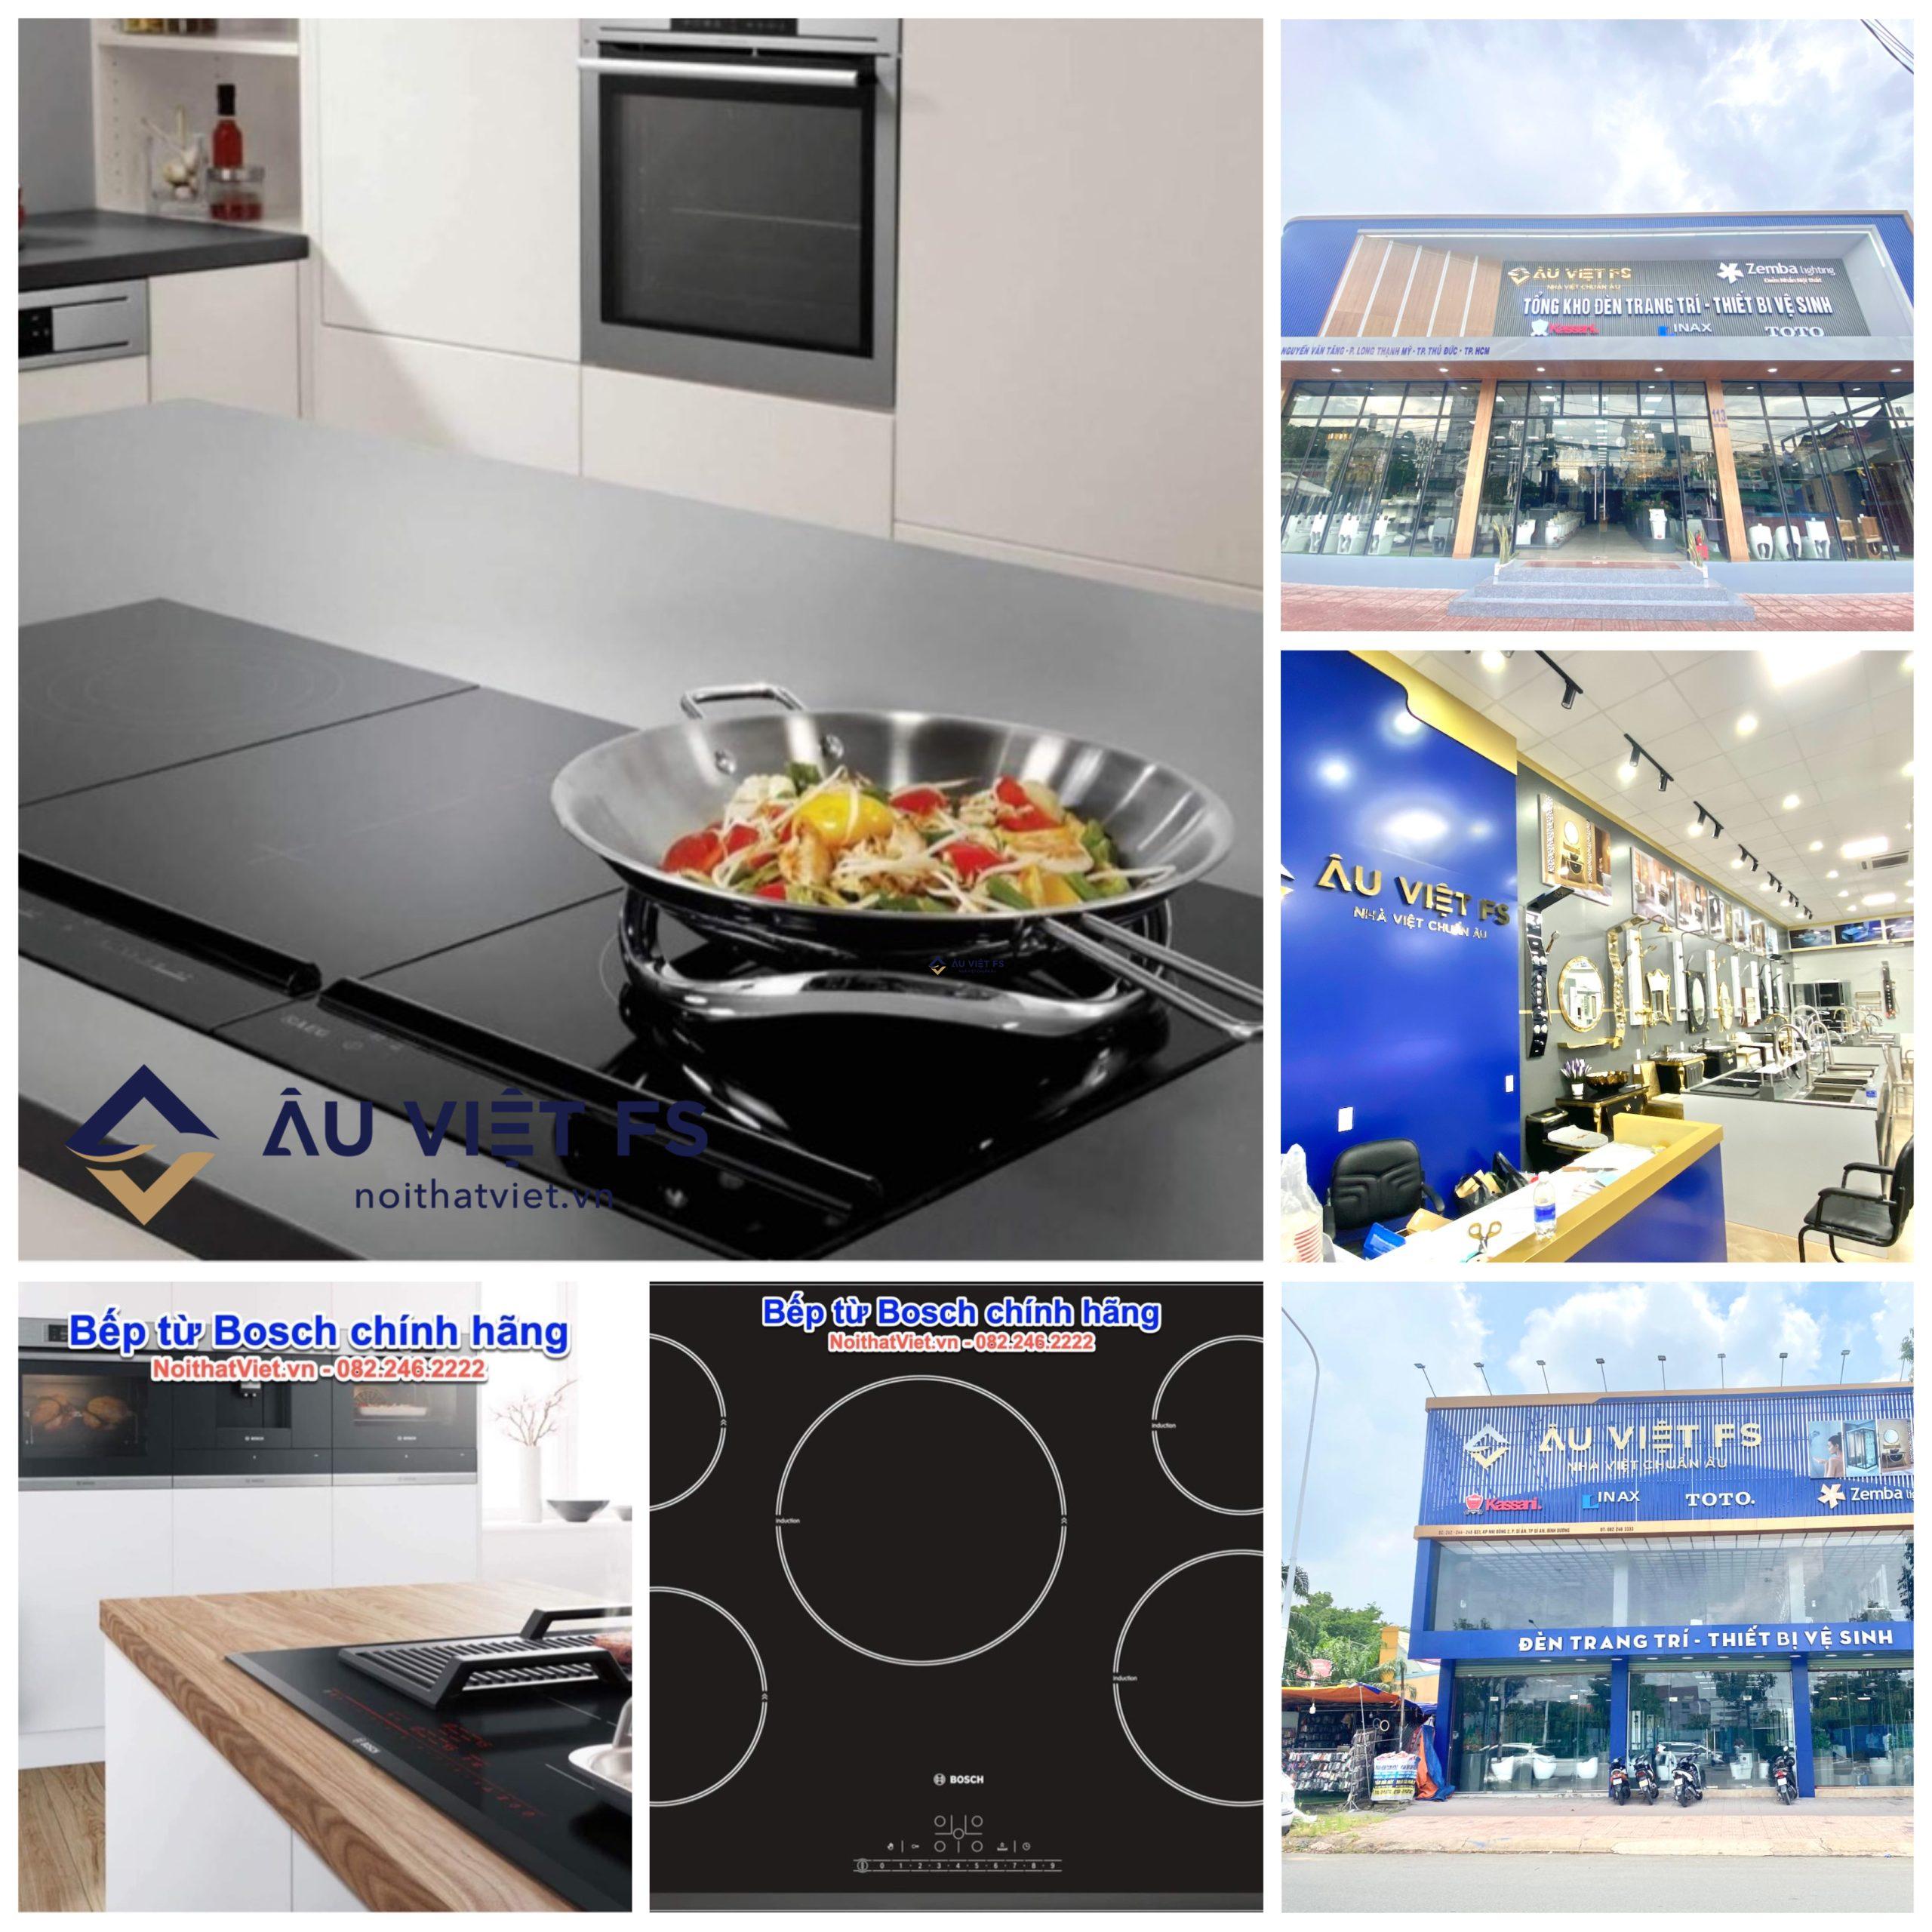 Địa chỉ mua thiết bị bếp Bosch giá rẻ tại TPHCM, Bosch, Bếp từ Bosch, Giá Bosch, Showroom Bosch, Thiết bị nhà bếp